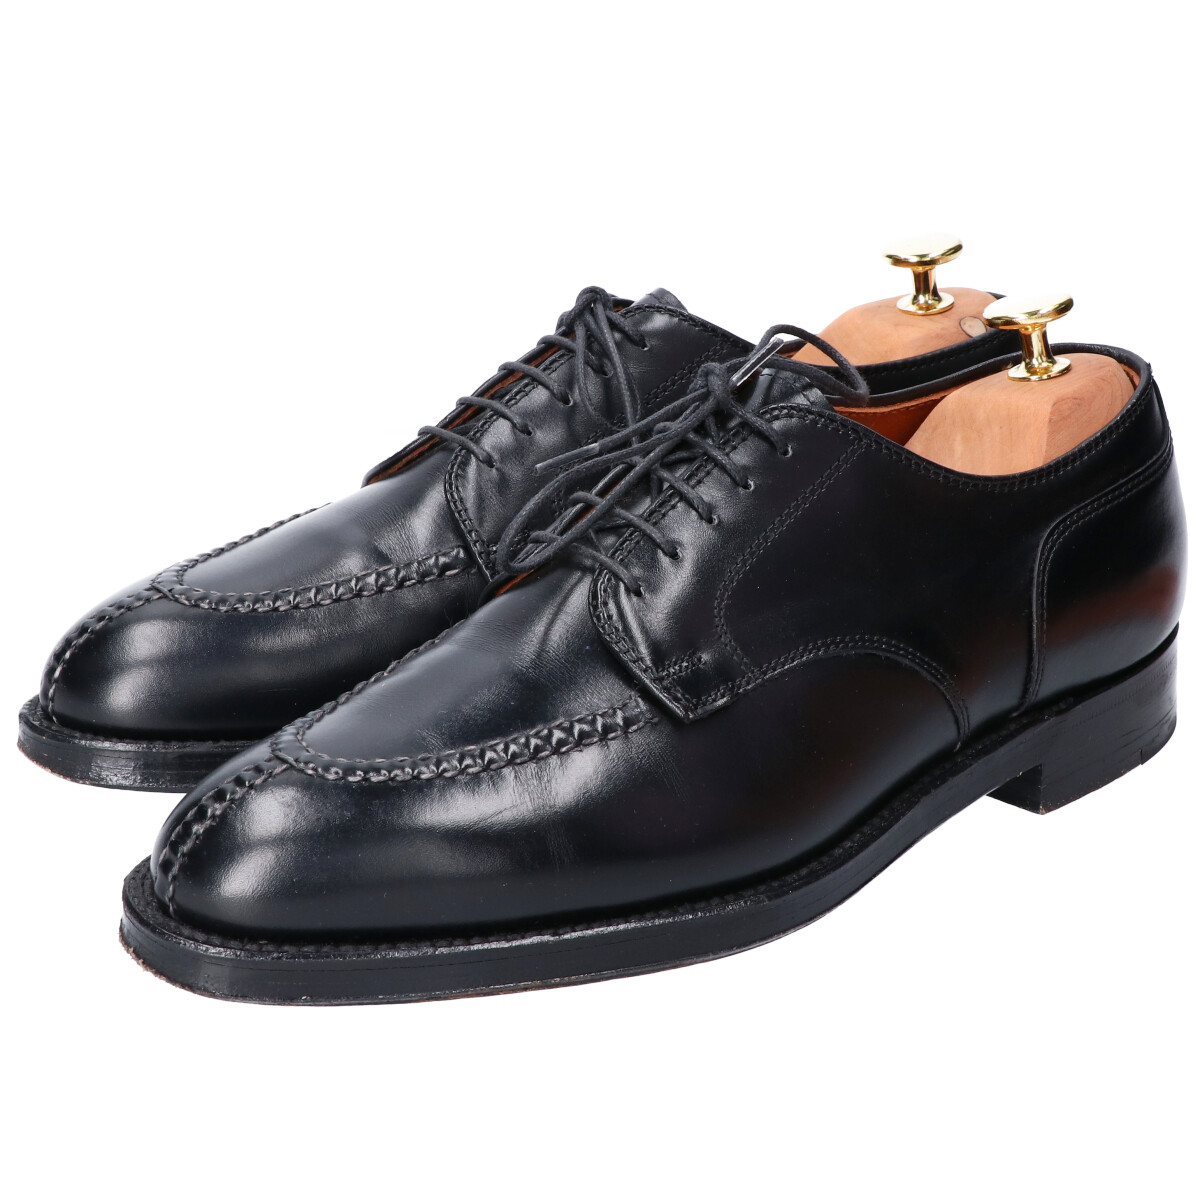 オールデンの961　ハンドソーンヴァンプ(Handsewn Vamp)　ブラック　Uチップ　カーフレザーシューズ/革靴の買取実績です。